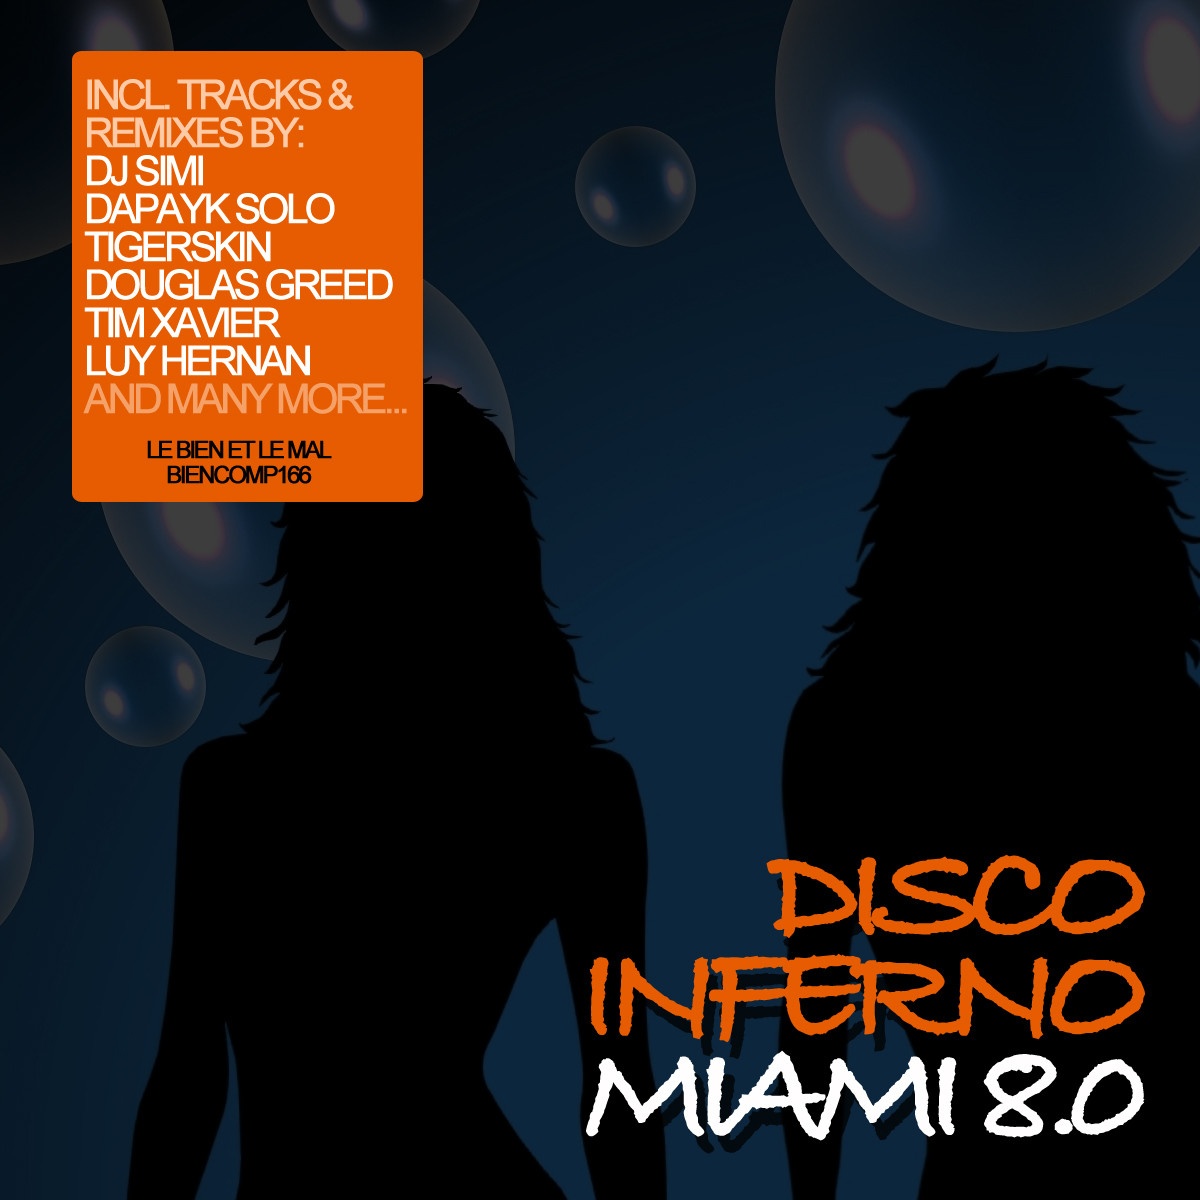 Disco Inferno Miami 8.0